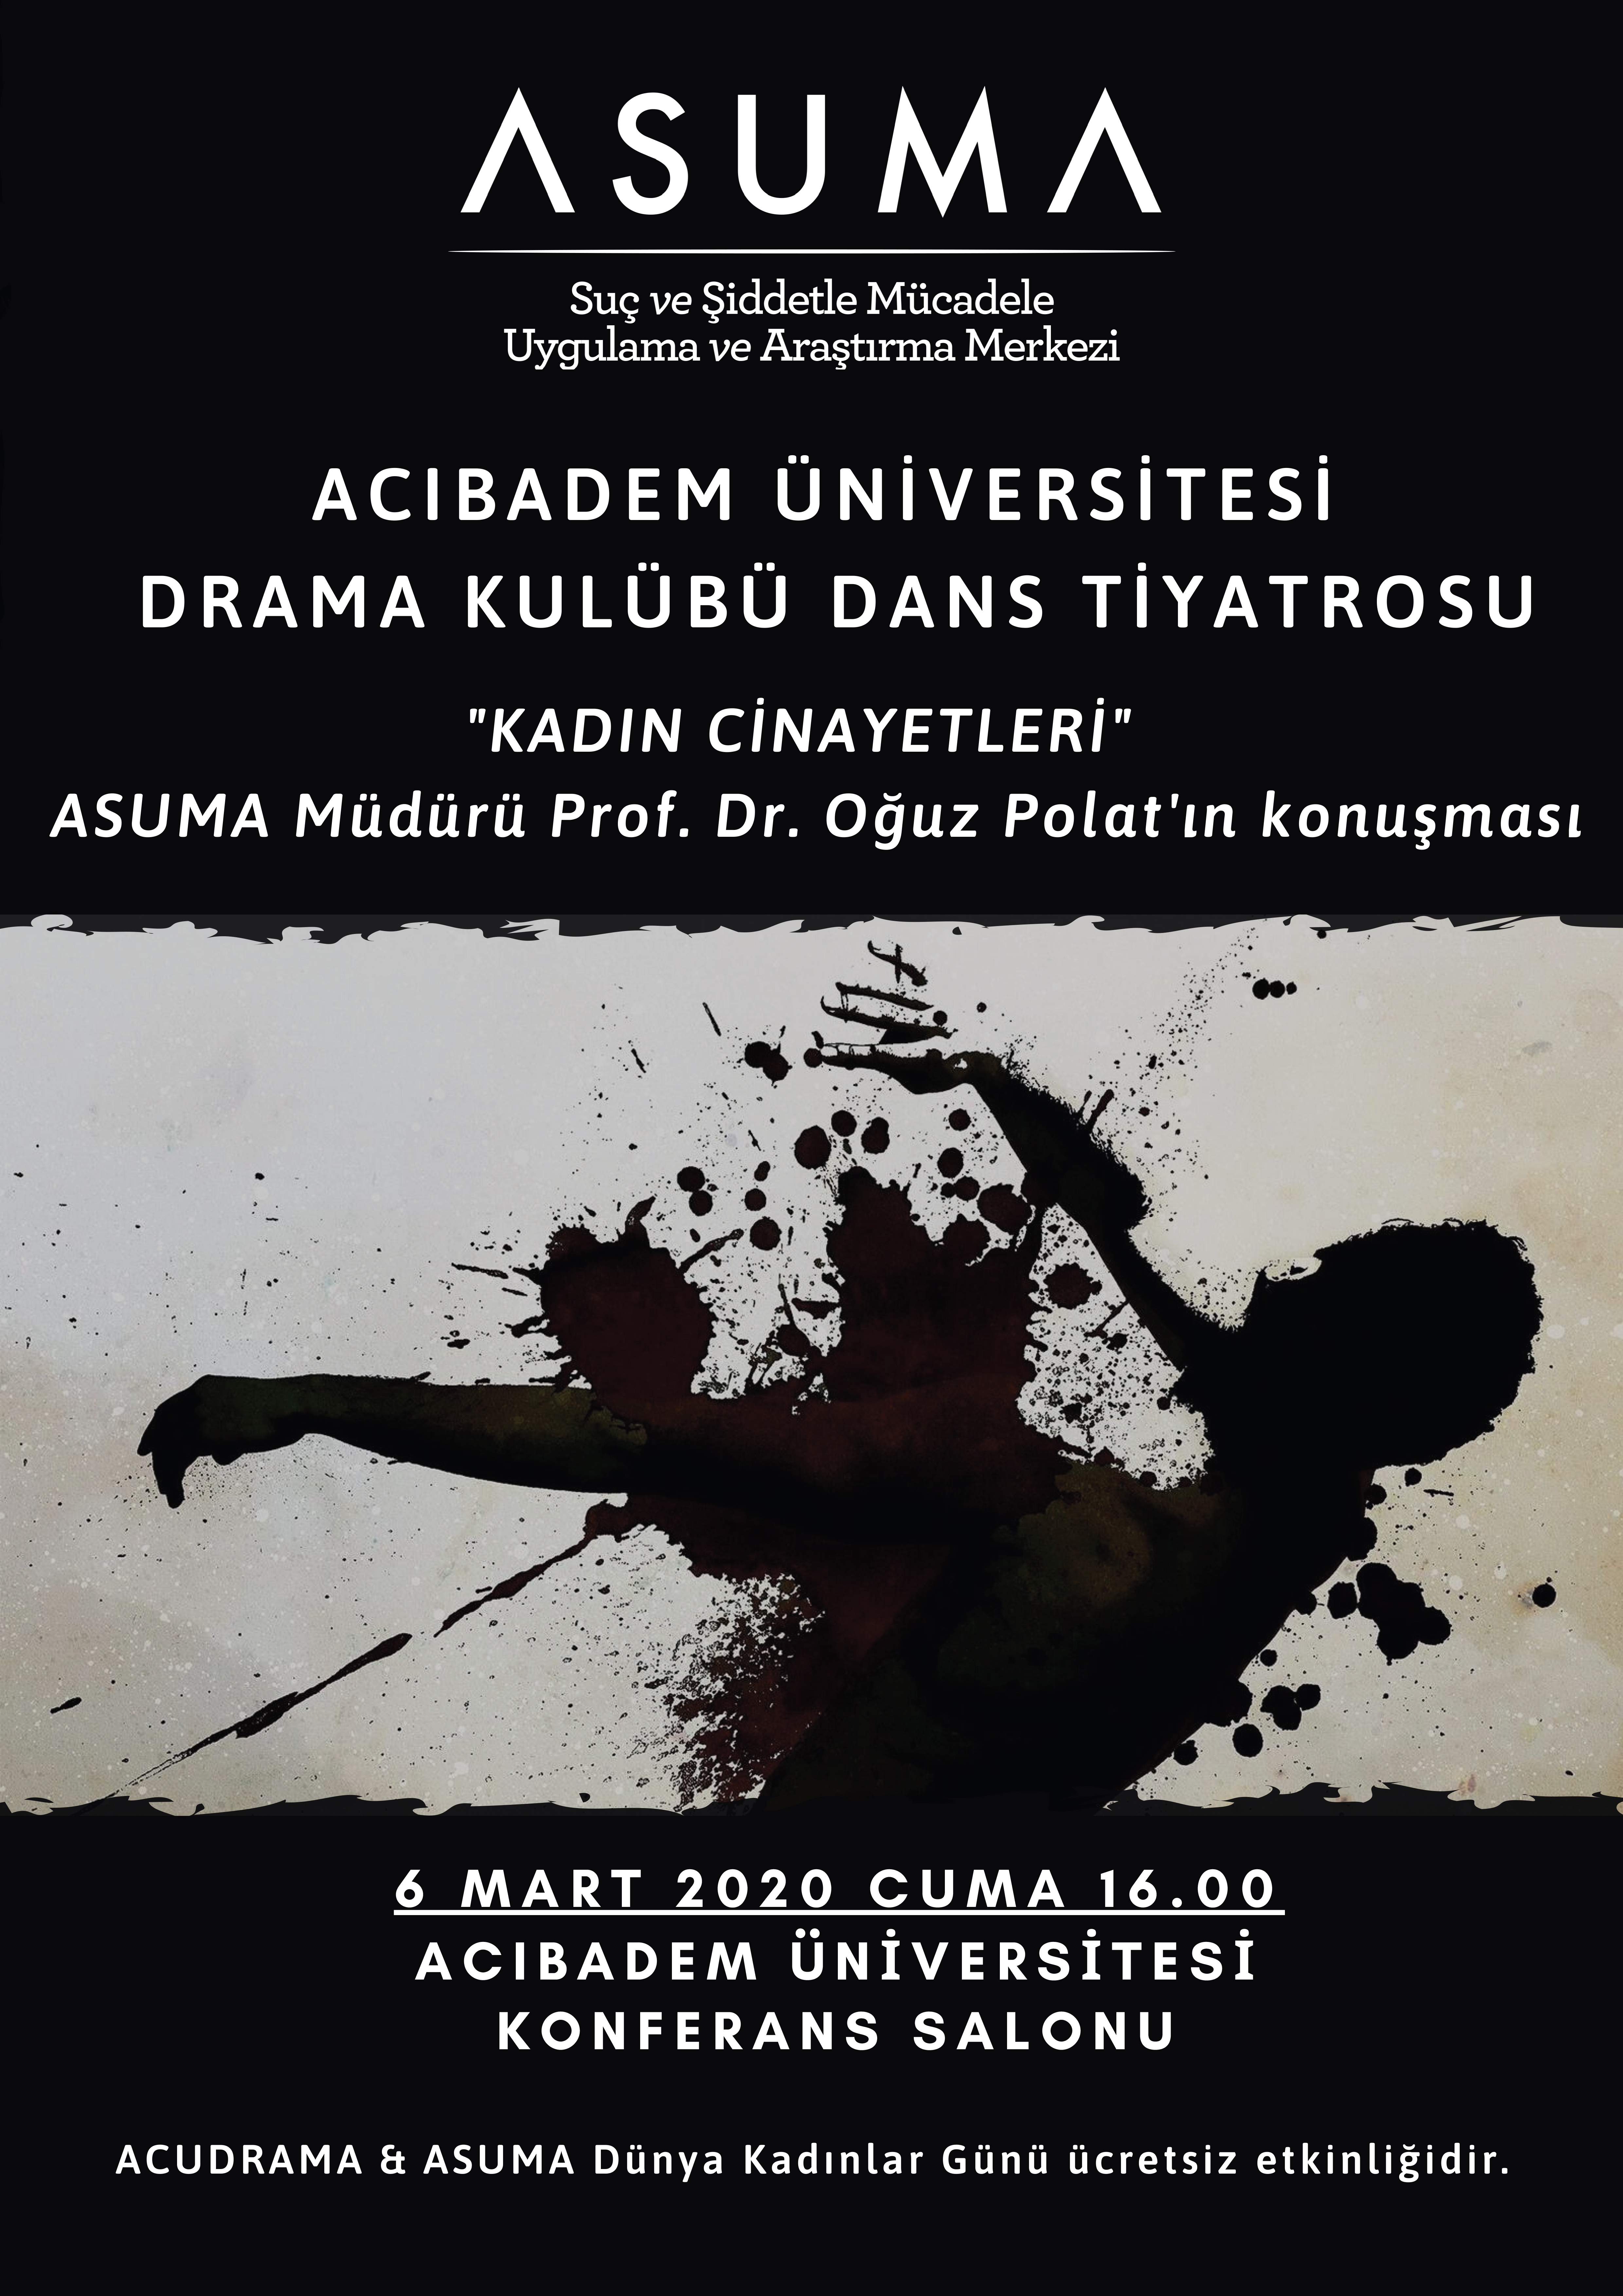 ASUMA ve ACU Drama Kulübü Dans Tiyatrosu "Kadın Cinayetleri"